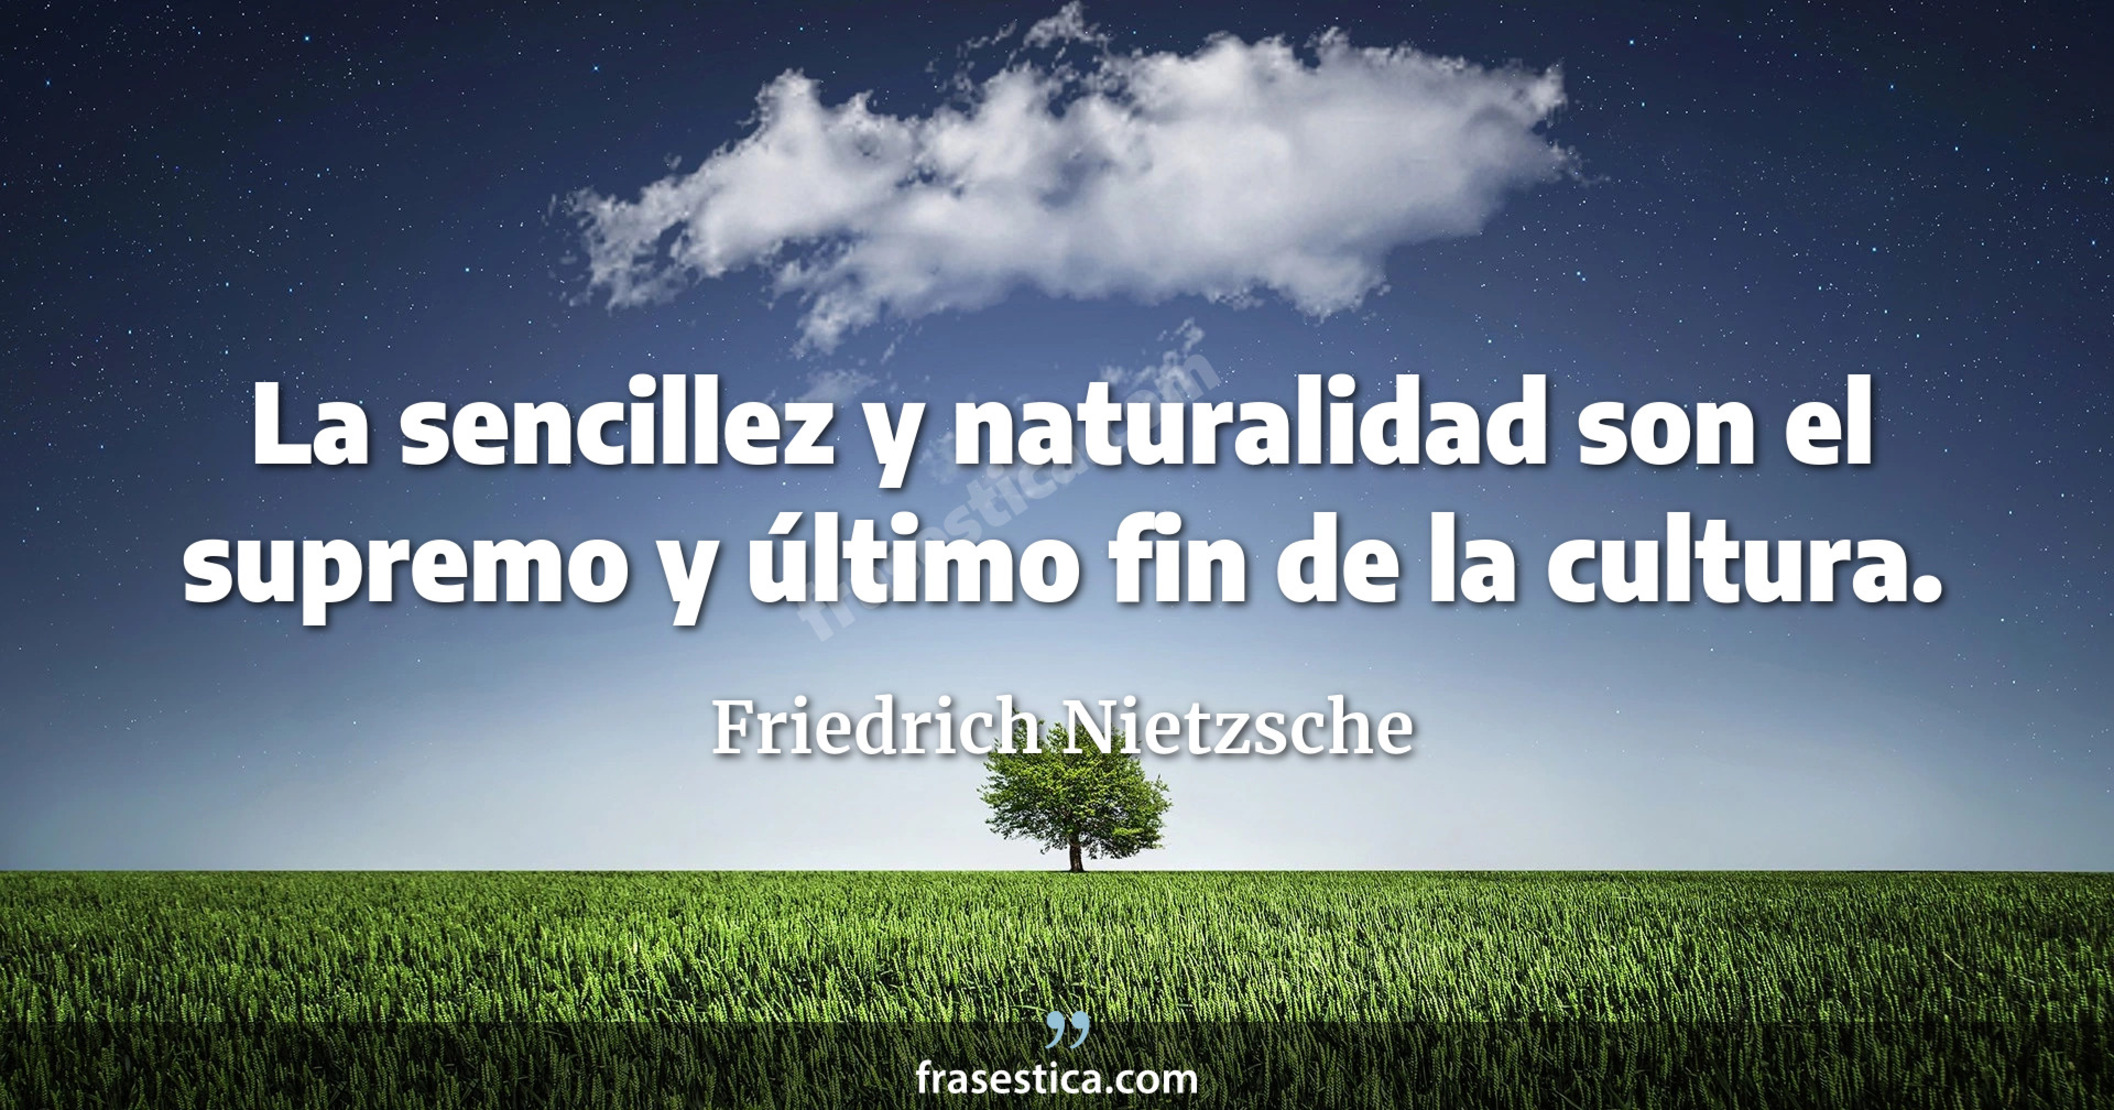 La sencillez y naturalidad son el supremo y último fin de la cultura. - Friedrich Nietzsche